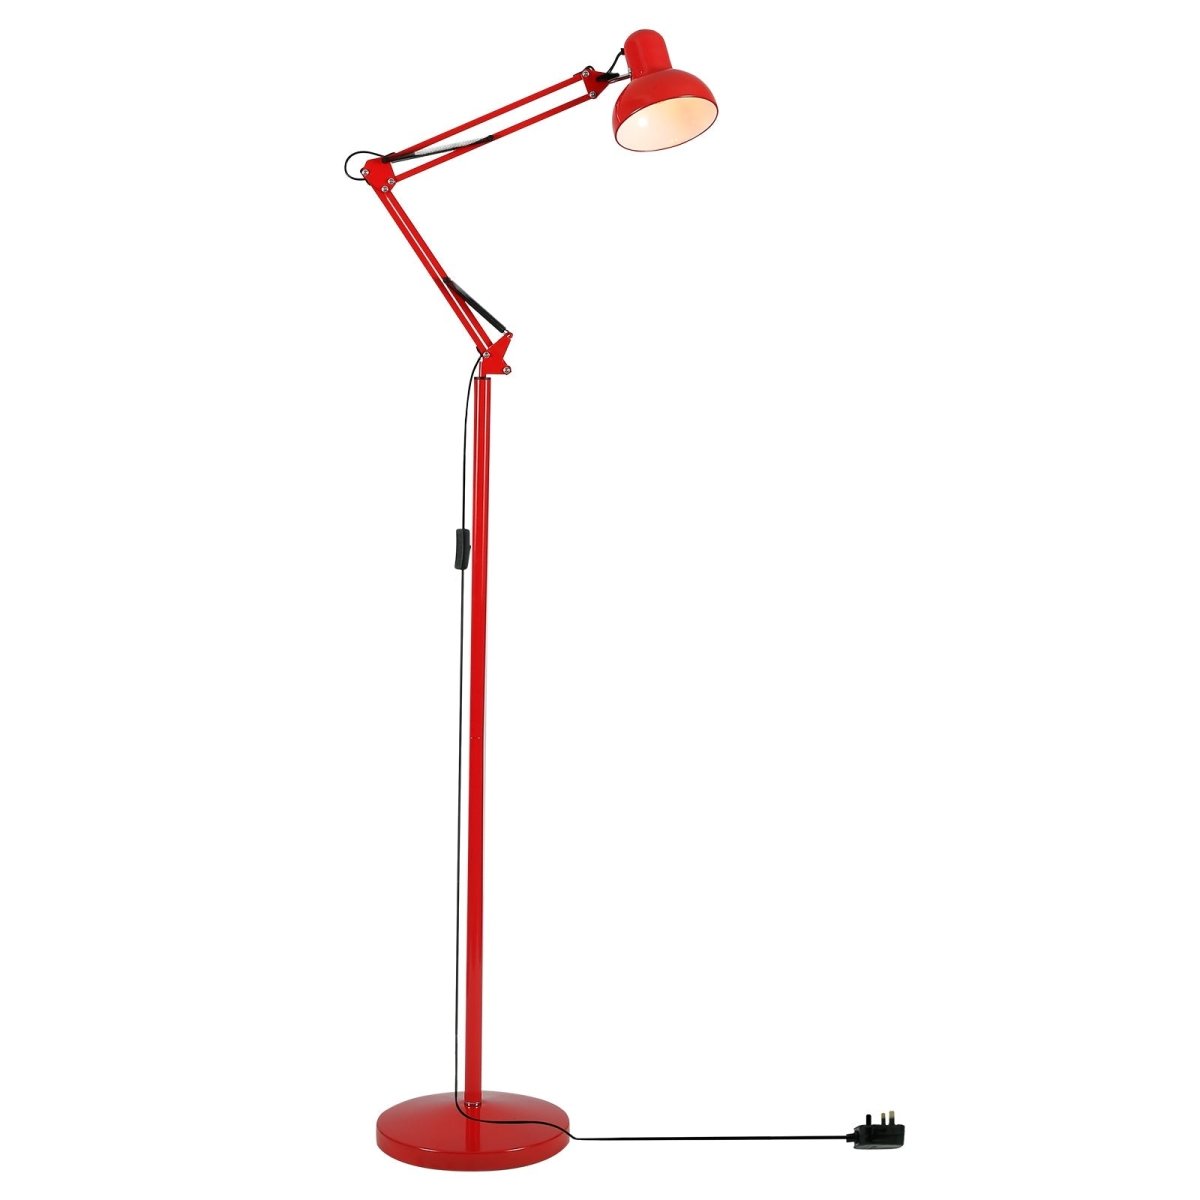 Main image of Swing Arm Architect Model Floor Lamp E27 Red | TEKLED 130-03353